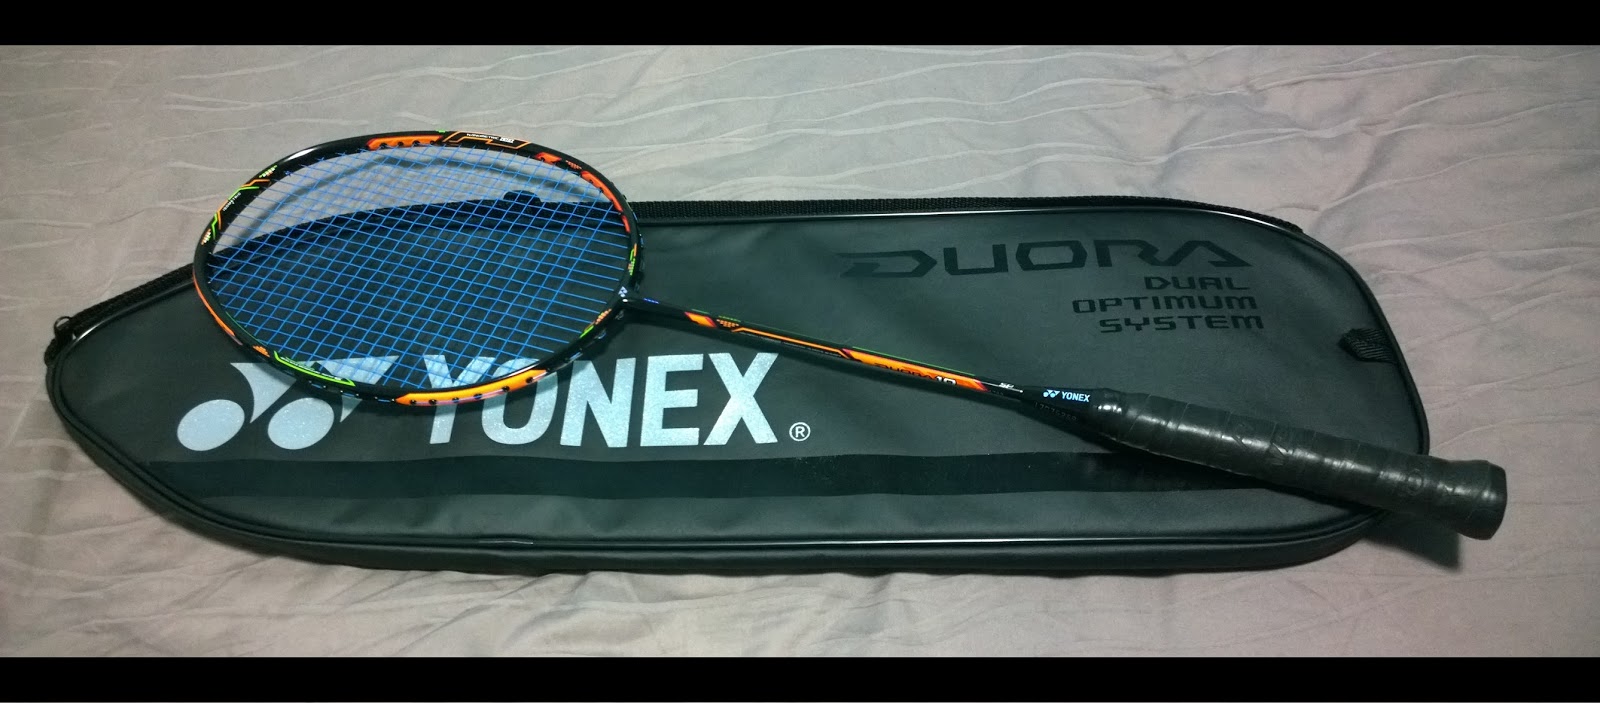 Of badminton things: Badminton Racket Review: Yonex Duora 10